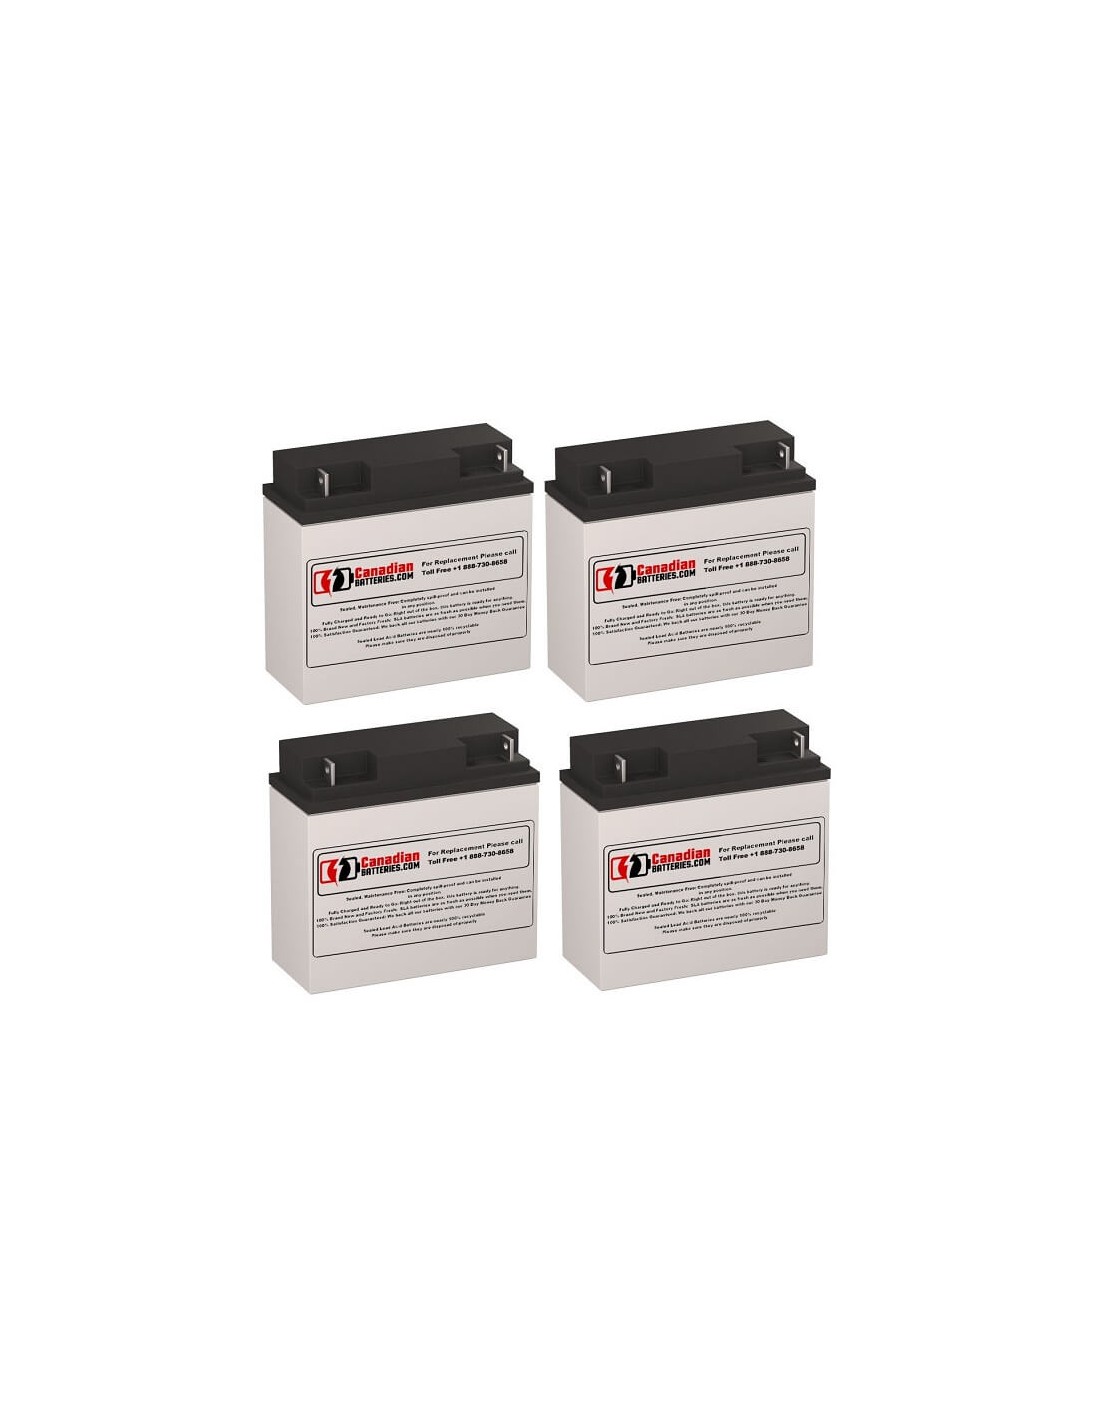 Batteries for Sola 501 (1650va) Sola UPS, 4 x 12V, 18Ah - 216Wh